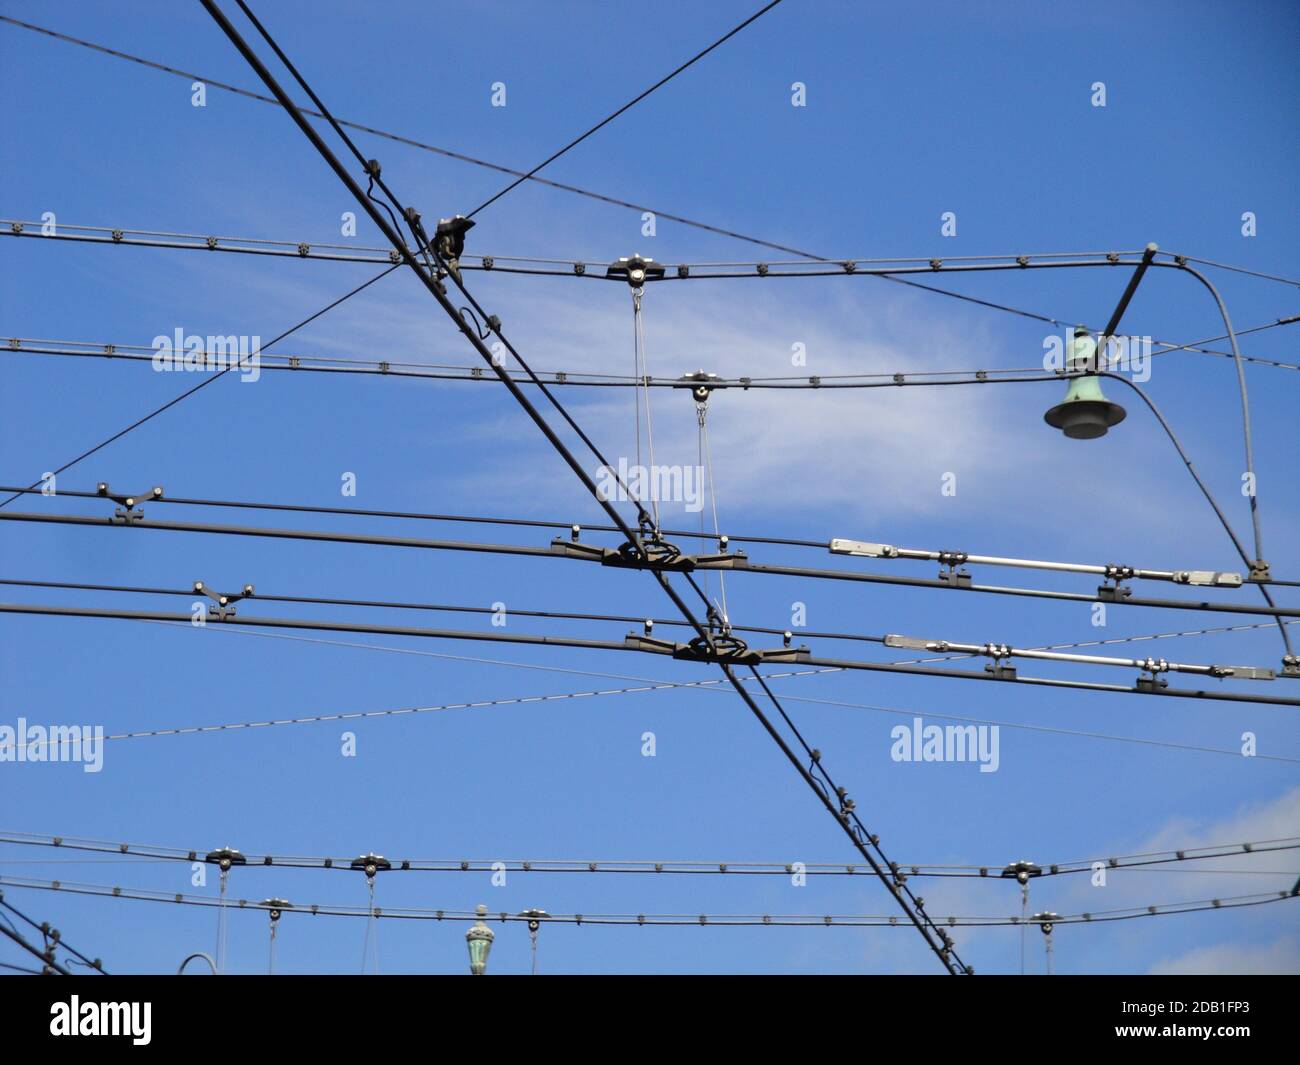 Impression des câbles aériens pour l'infrastructure de trolleybus à Berne, la capitale de la Suisse. Peut-être vieux, mais peut-être une partie de l'avenir. Banque D'Images